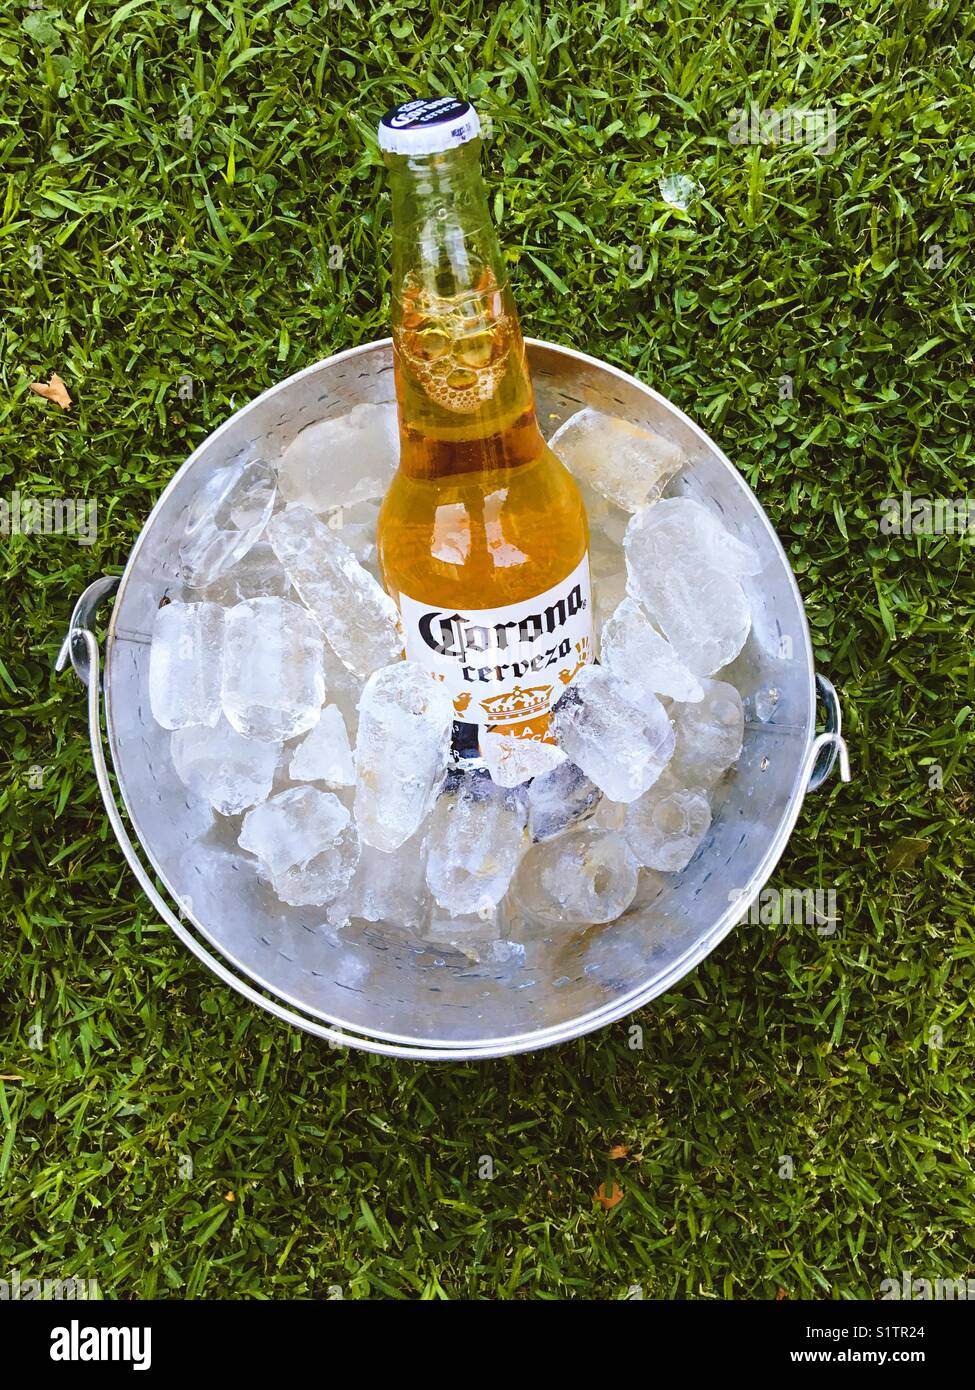 Corona beer Stock Photo: 310946220 - Alamy